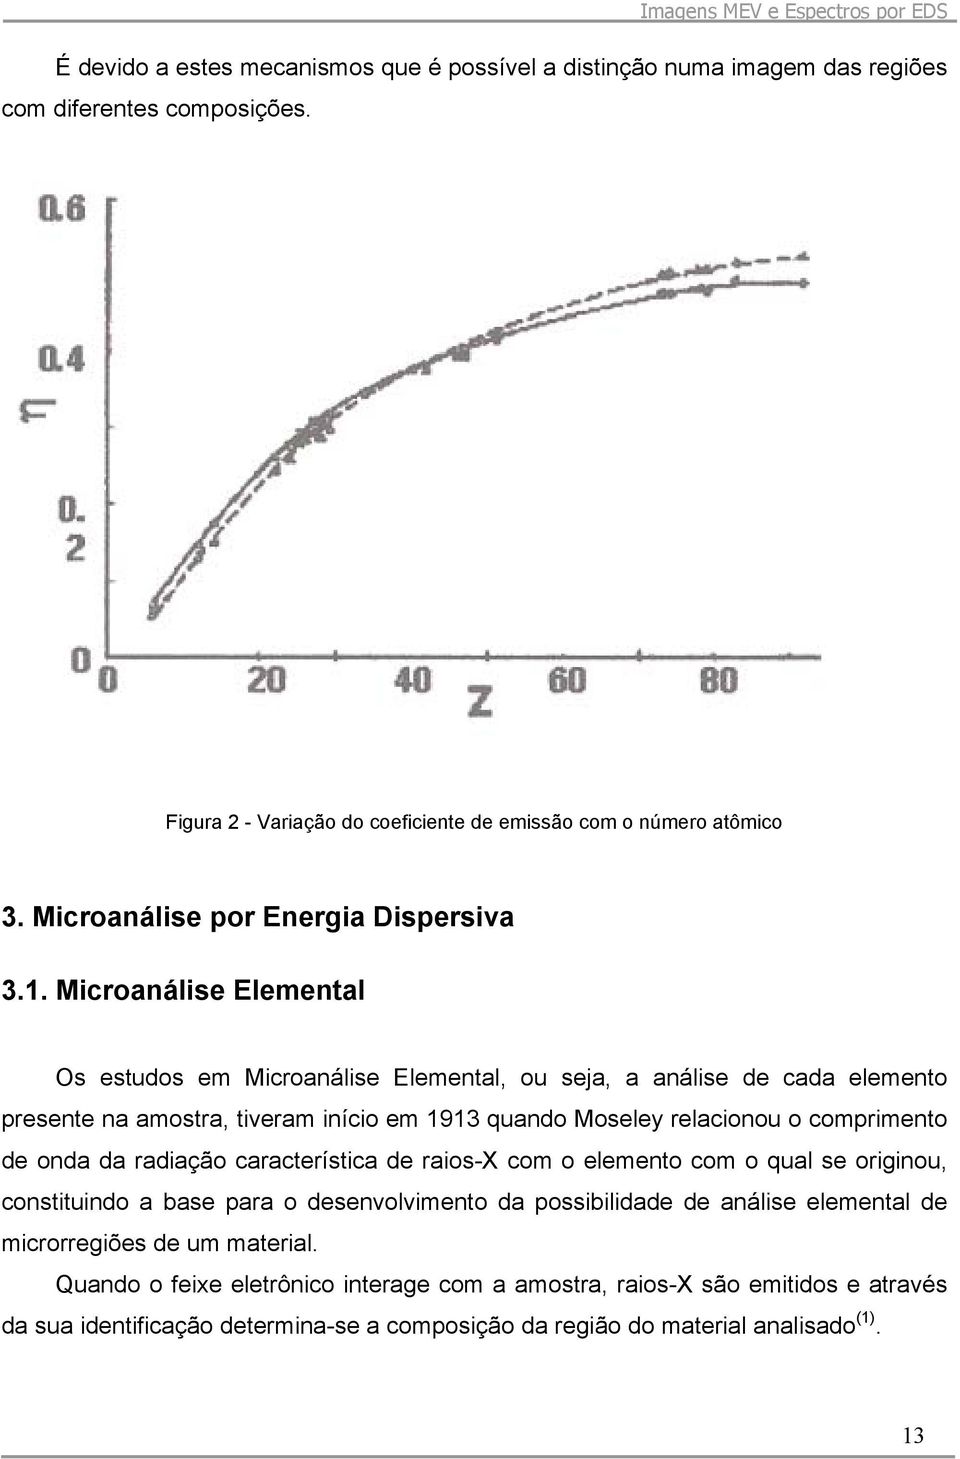 Microanálise Elemental Os estudos em Microanálise Elemental, ou seja, a análise de cada elemento presente na amostra, tiveram início em 1913 quando Moseley relacionou o comprimento de onda da